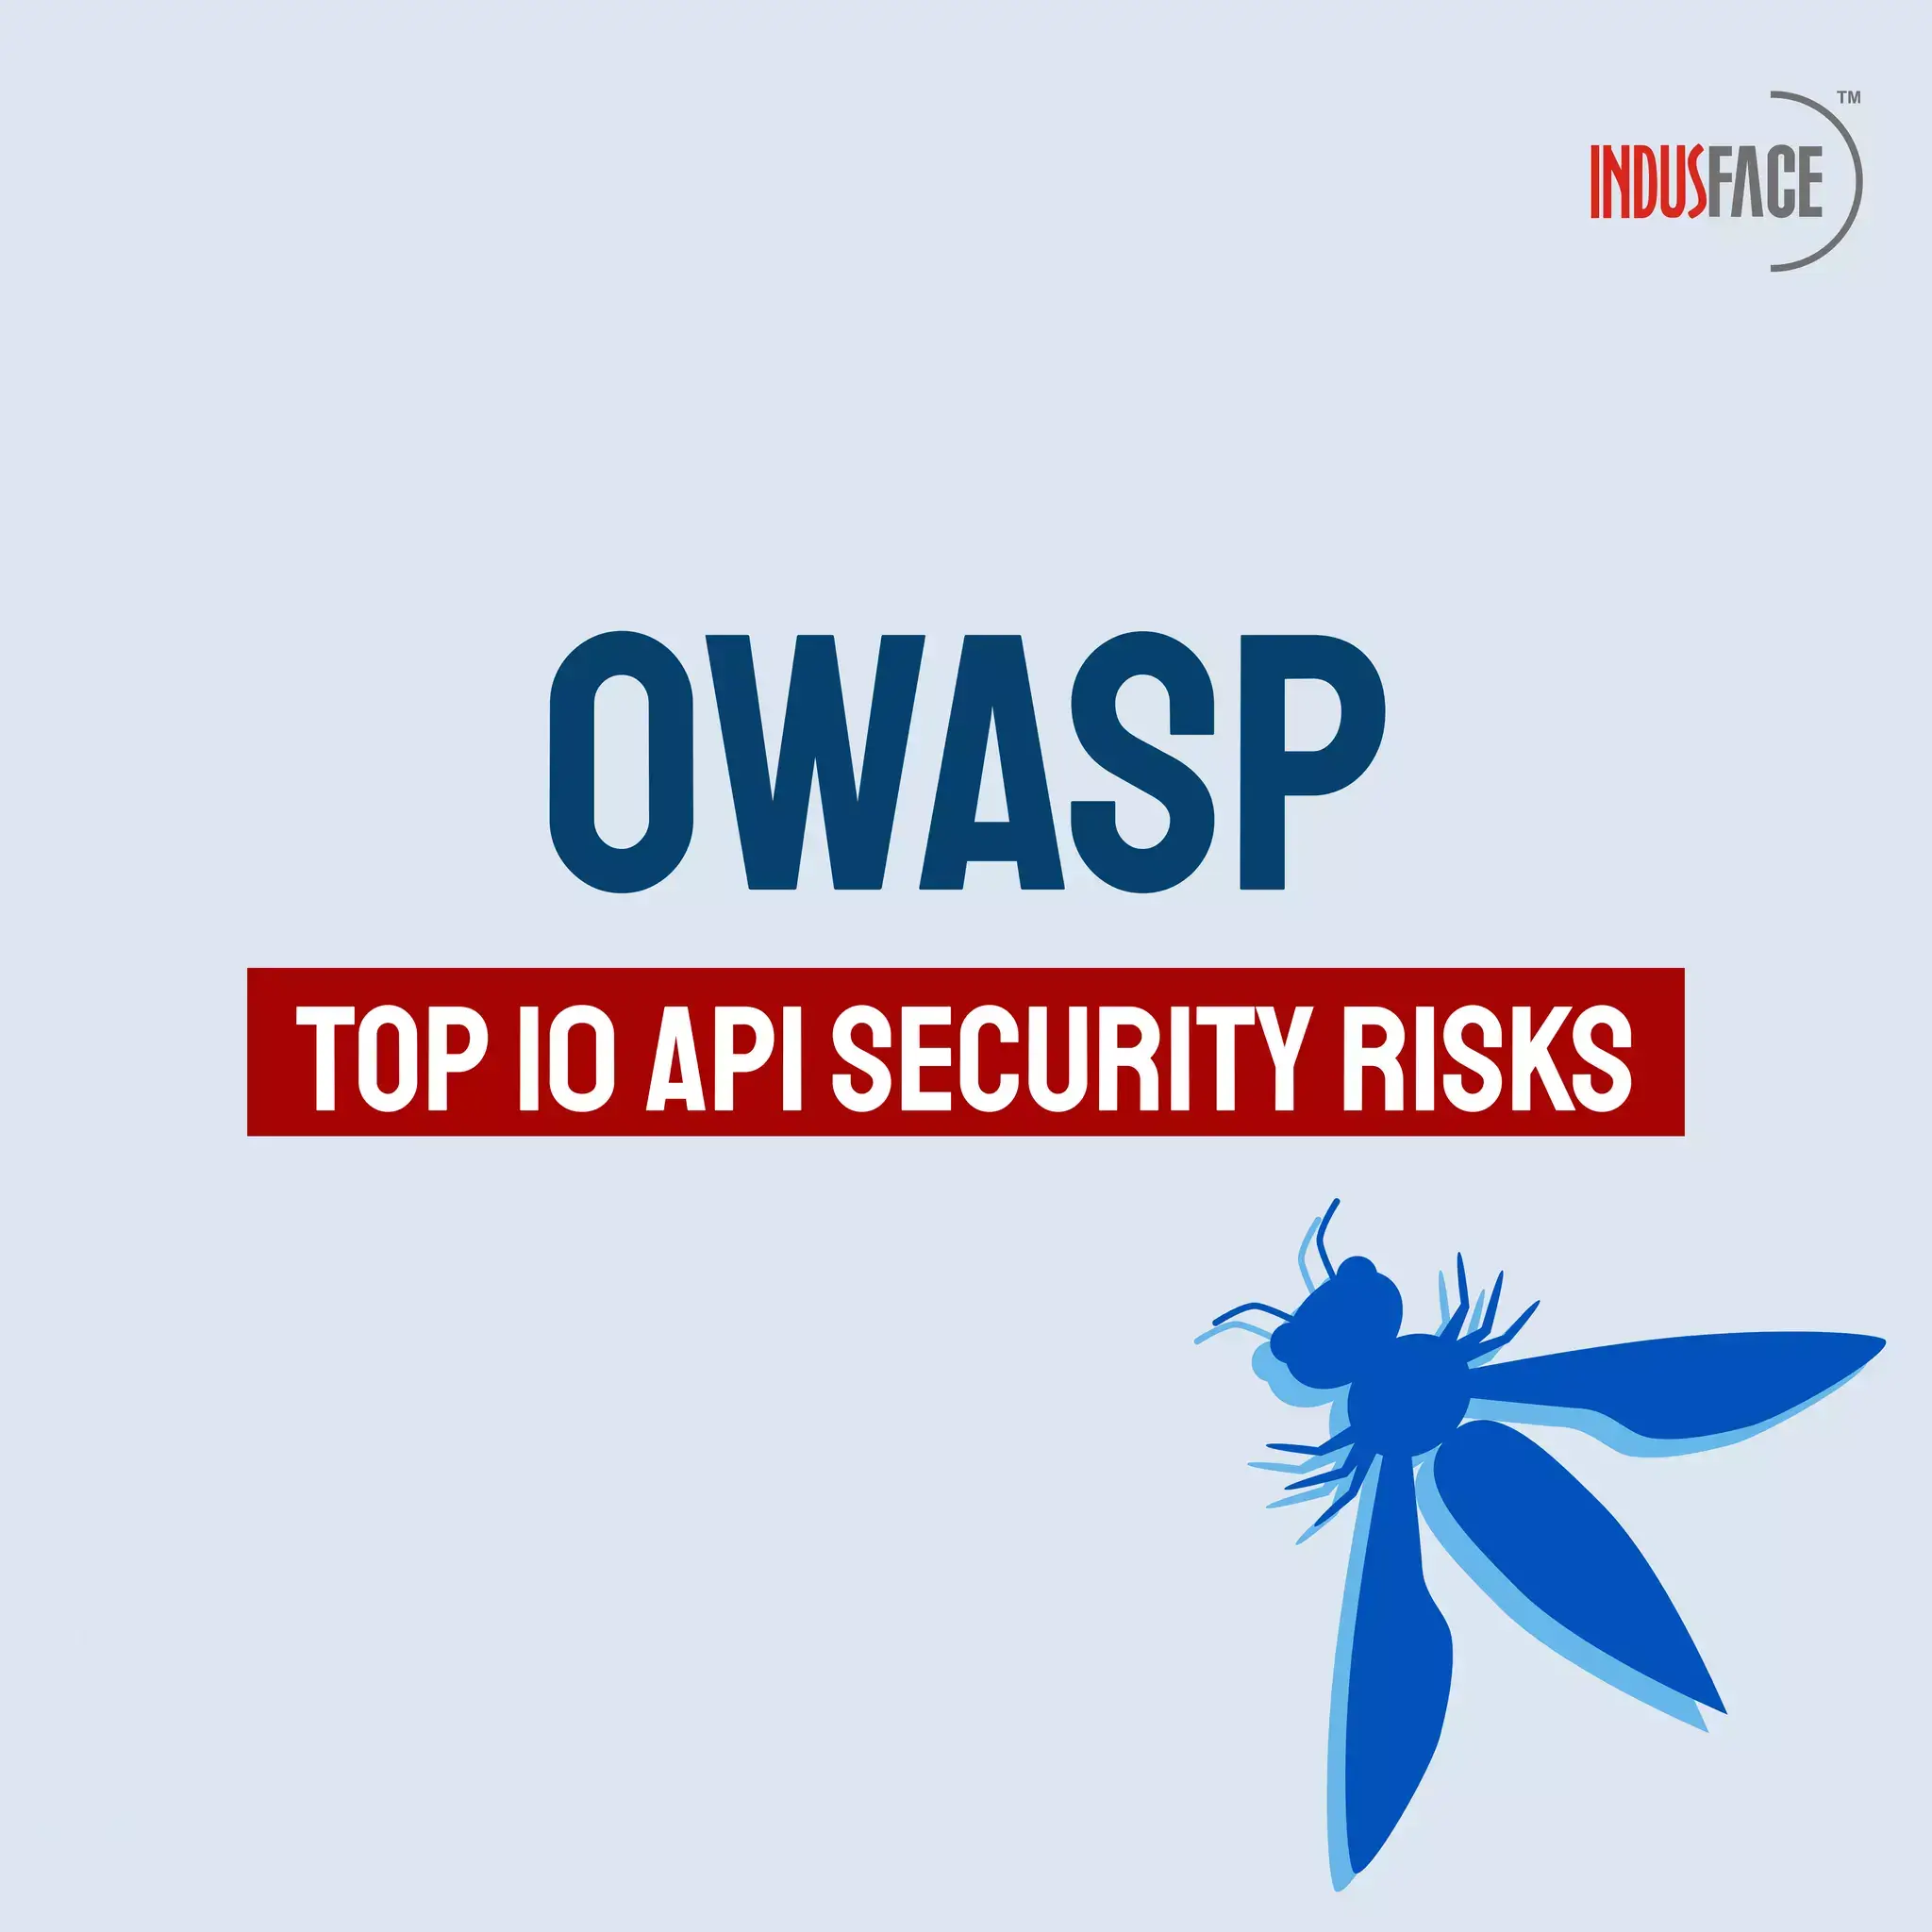 Owasp Top 10 API Security Risks